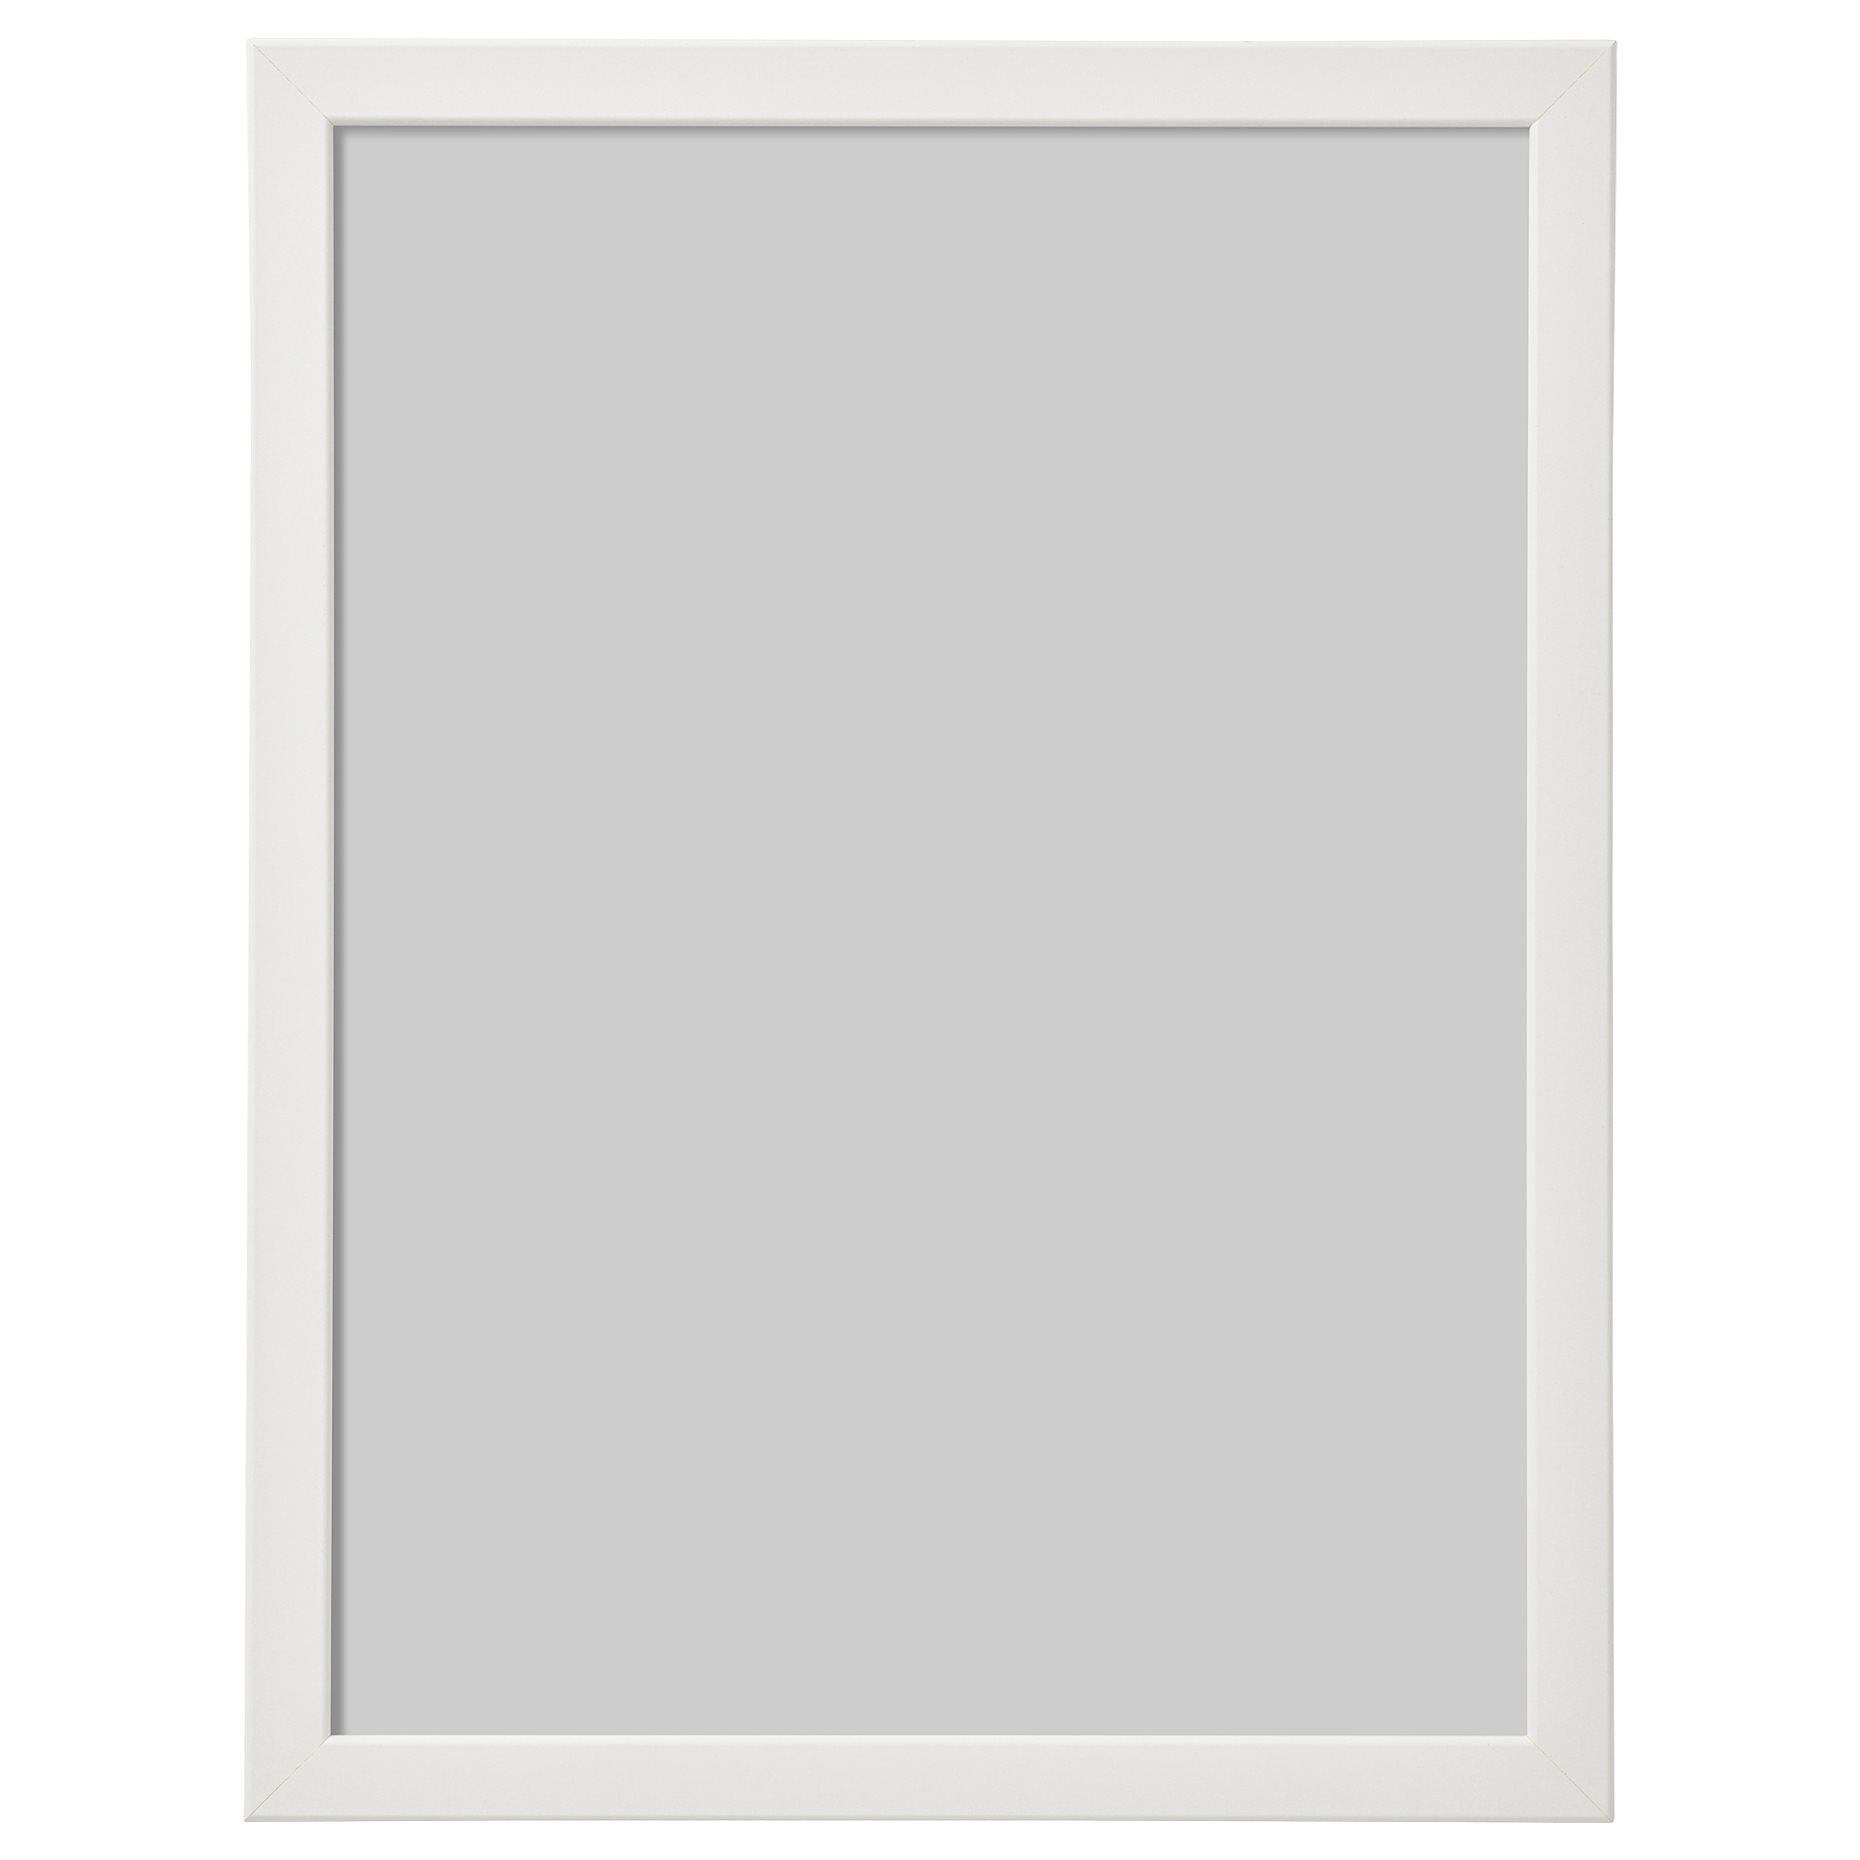 FISKBO, frame, 30x40 cm, 103.003.95